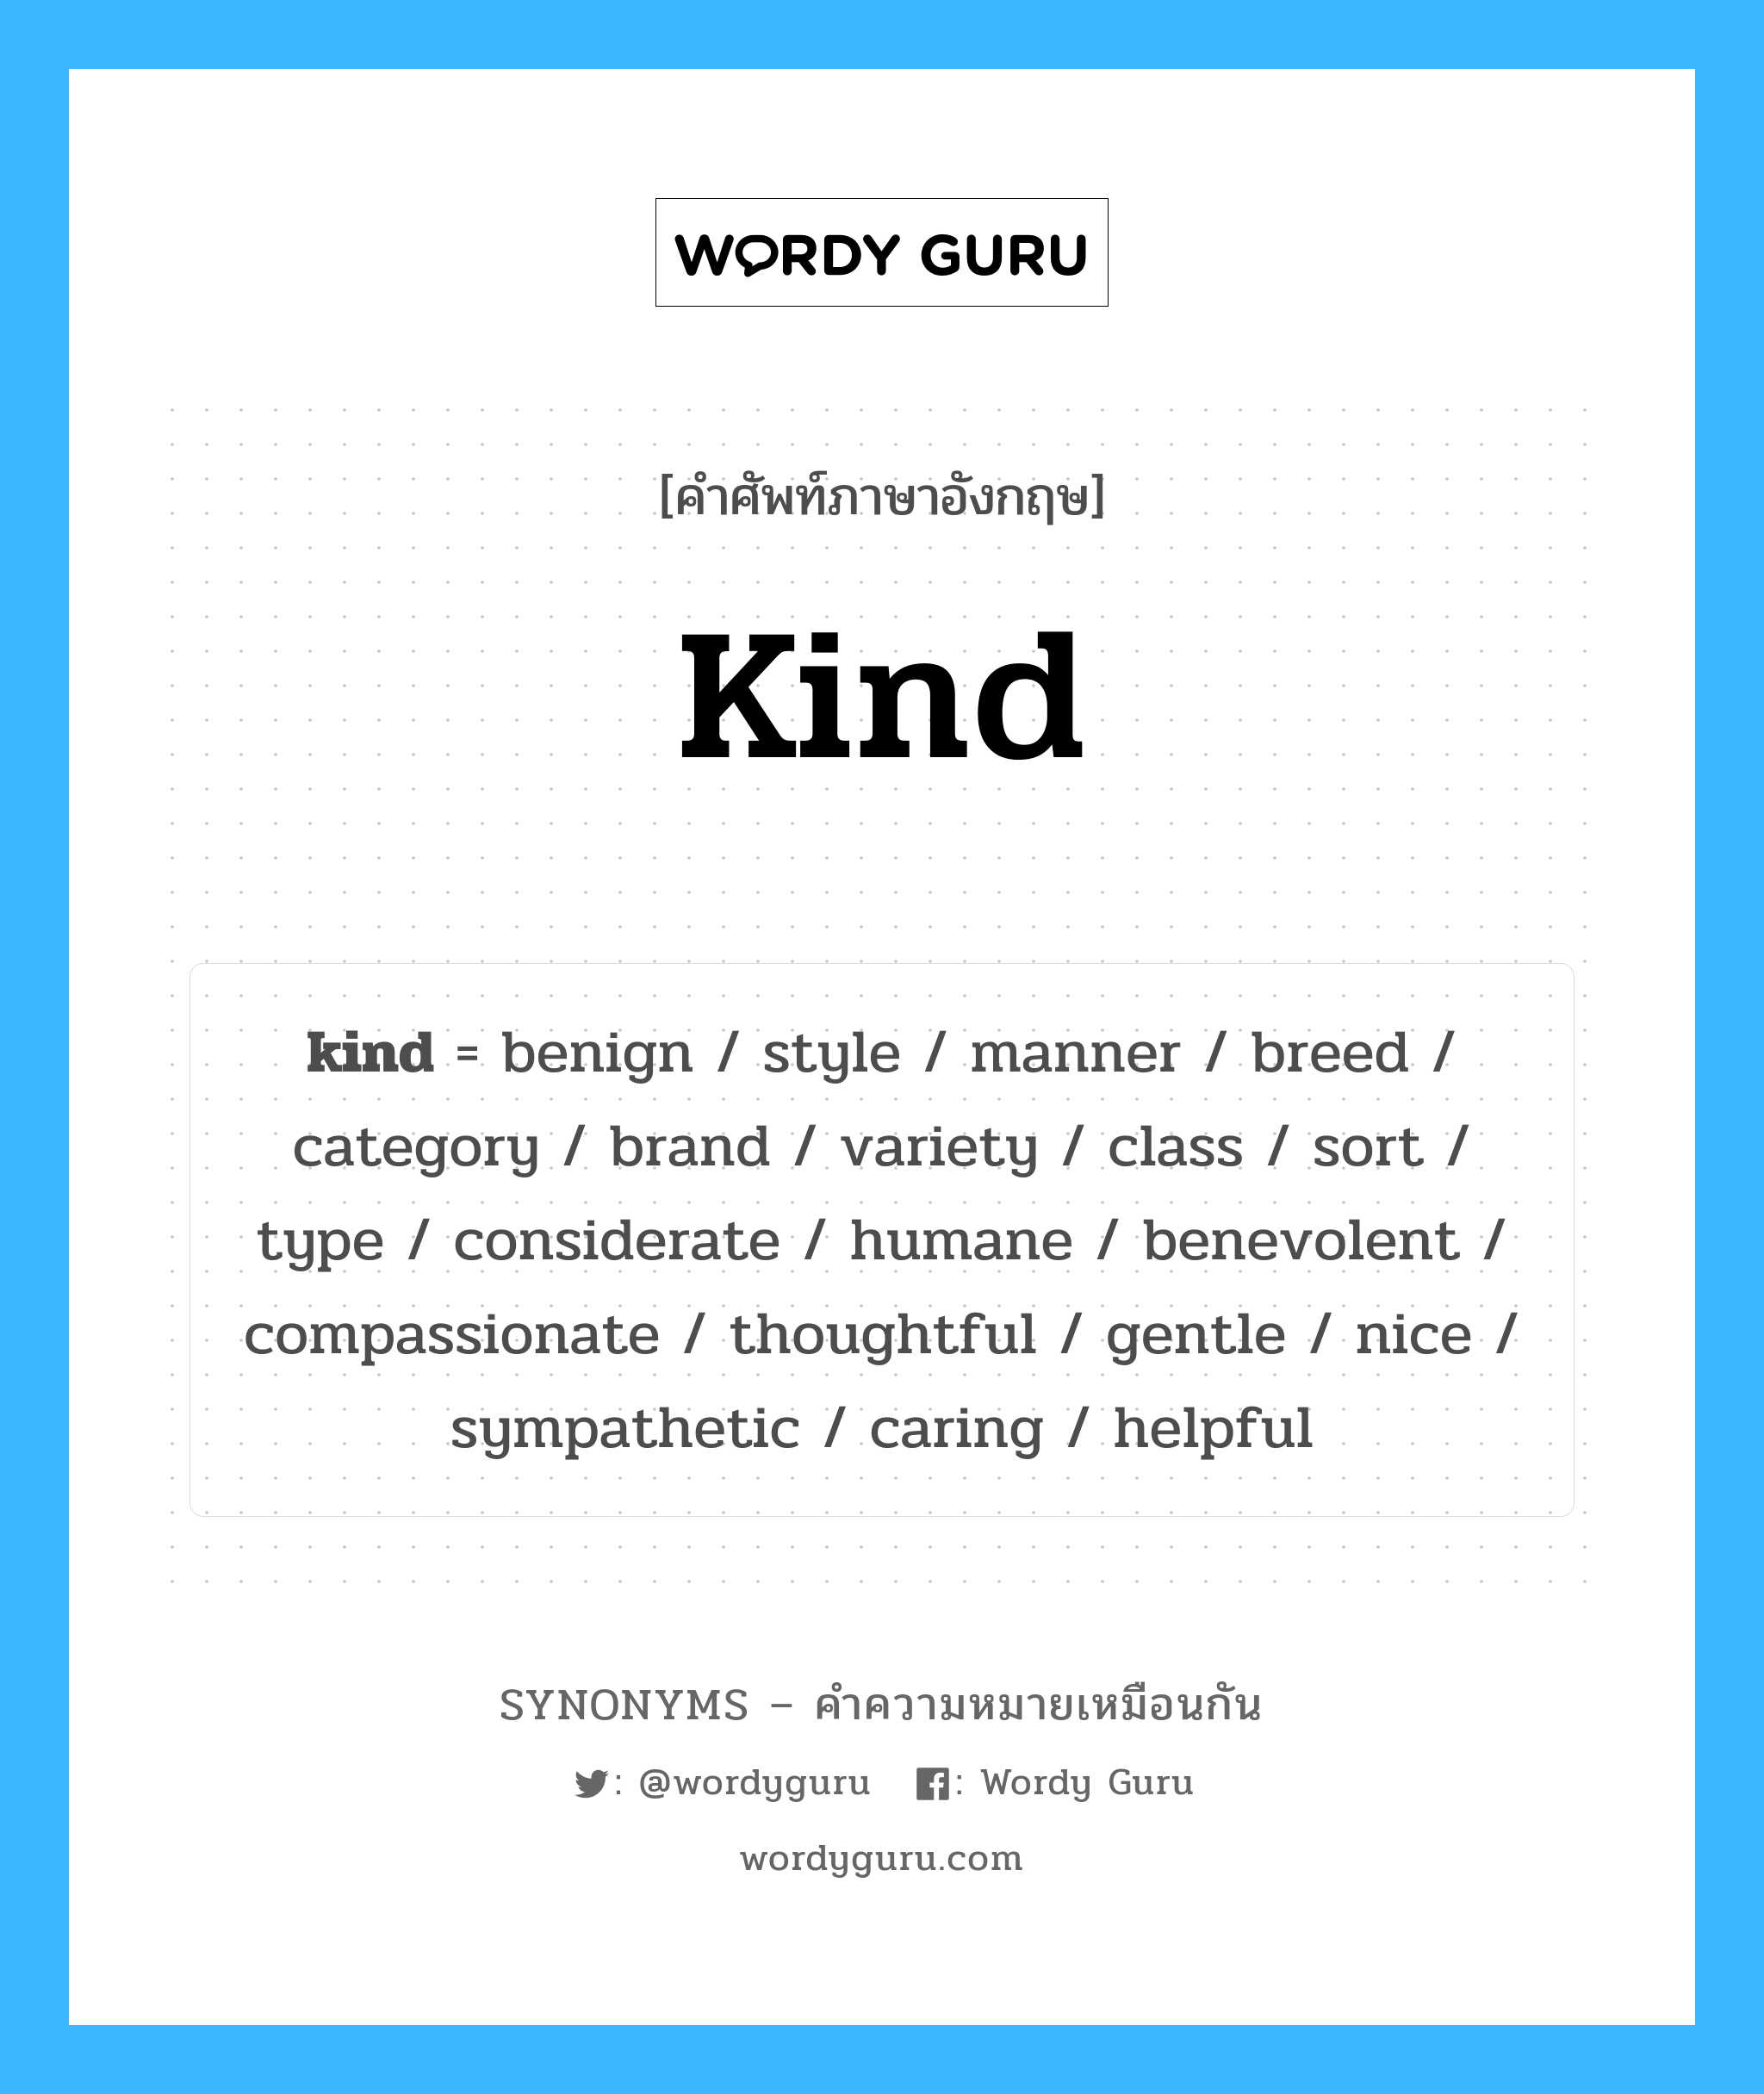 benign เป็นหนึ่งใน kind และมีคำอื่น ๆ อีกดังนี้, คำศัพท์ภาษาอังกฤษ benign ความหมายคล้ายกันกับ kind แปลว่า อ่อนโยน หมวด kind